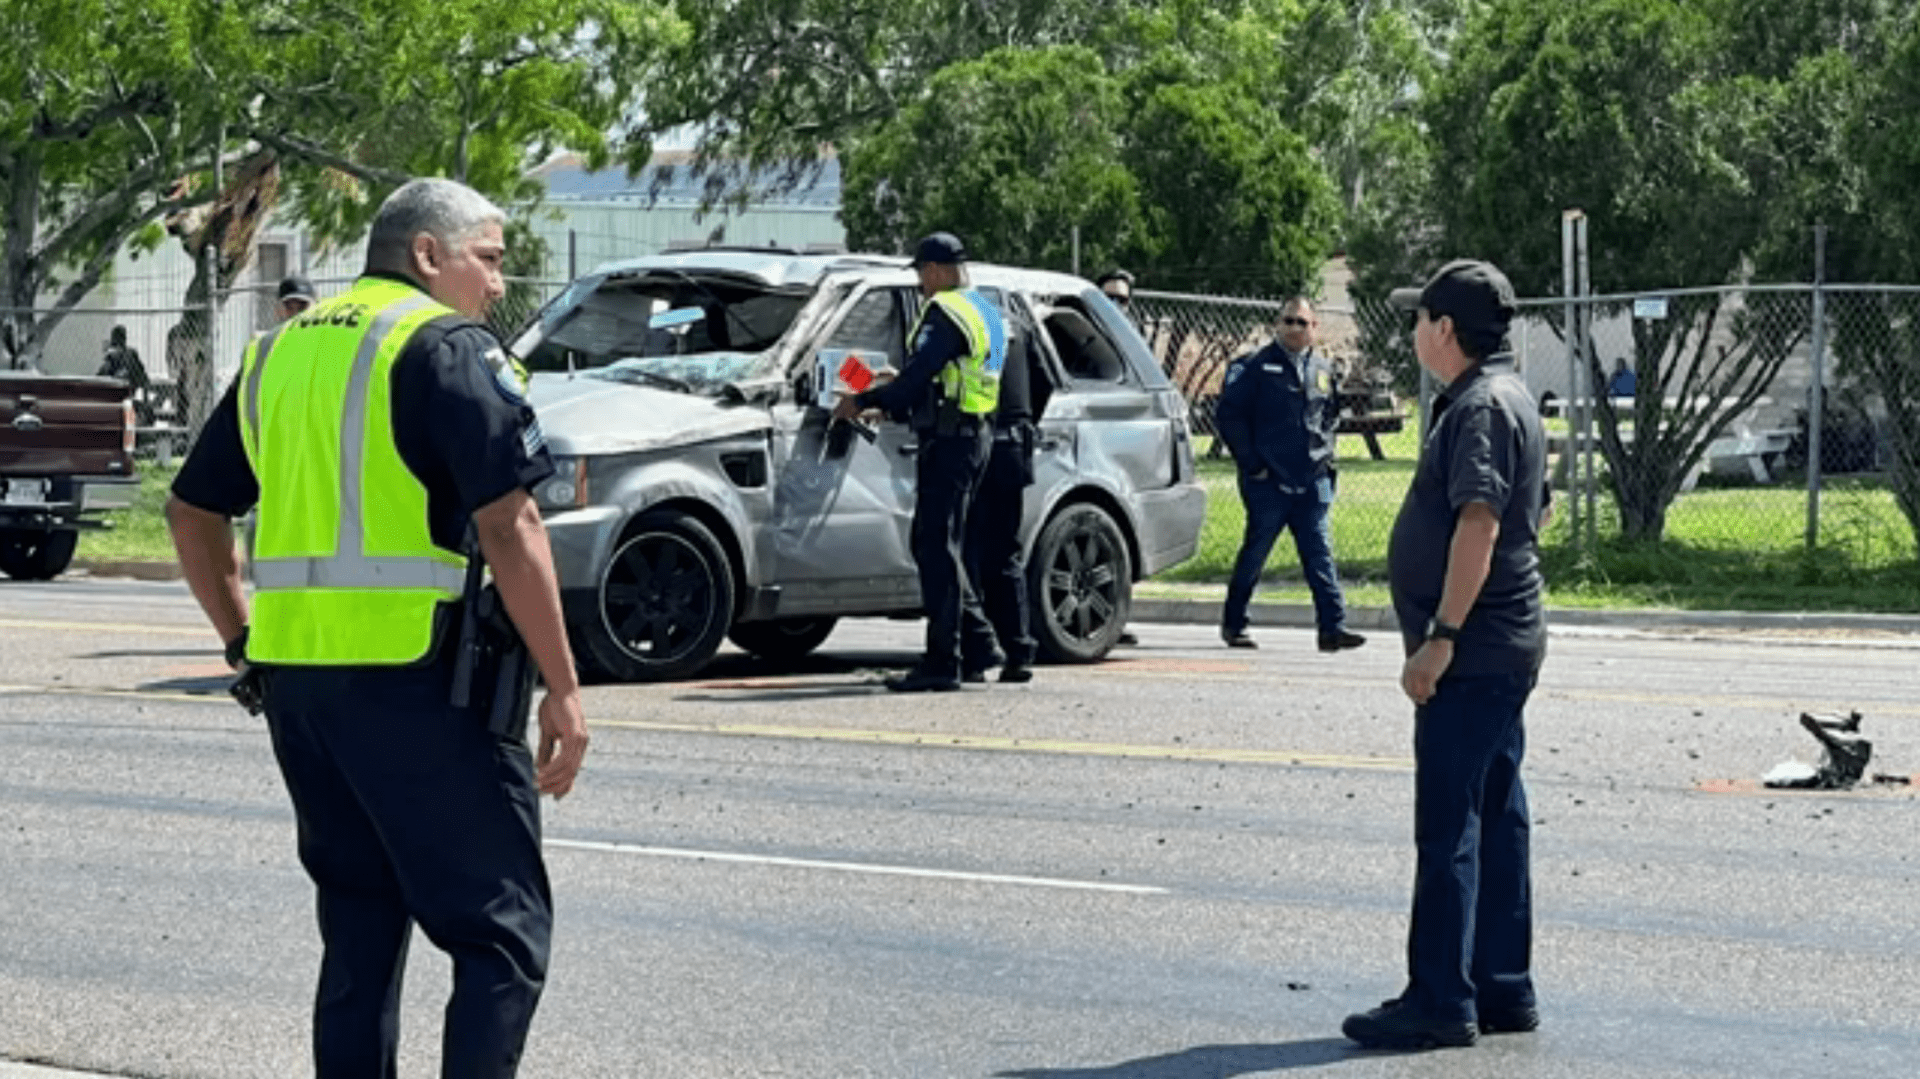 Auto najelo do lidí na autobusové zastávce v texaském Brownsville.